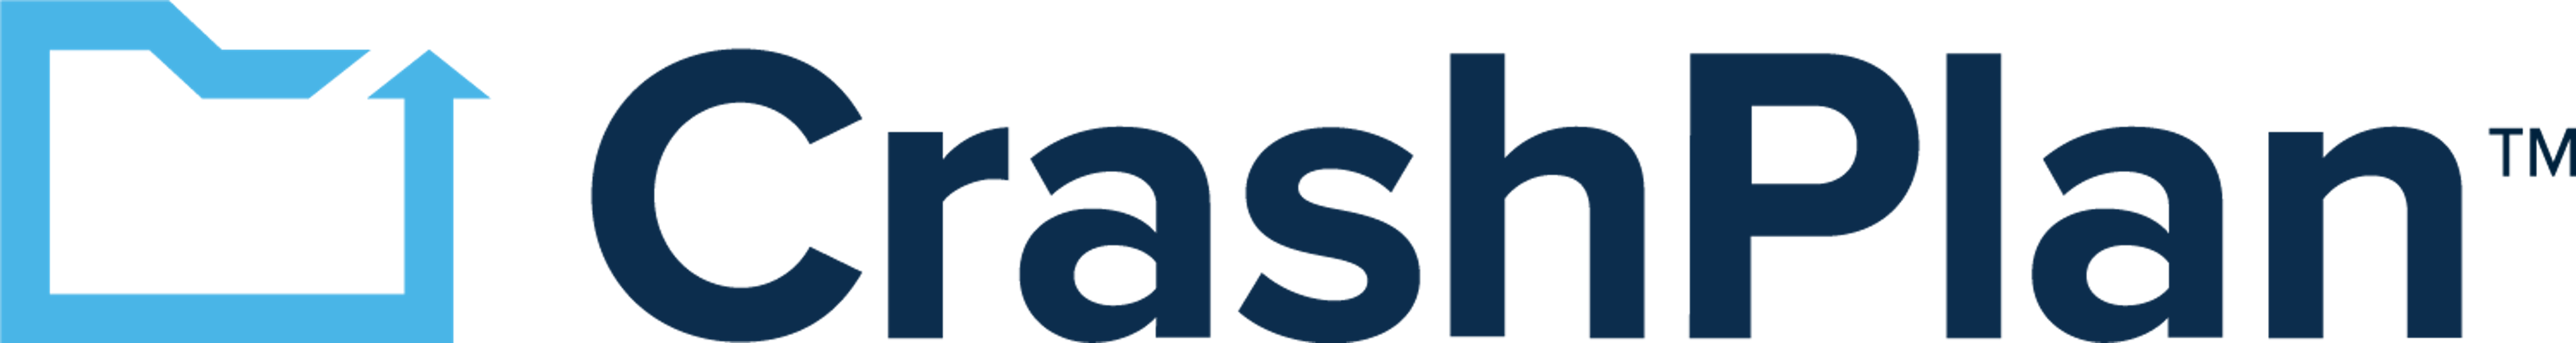 CrashPlan Logo